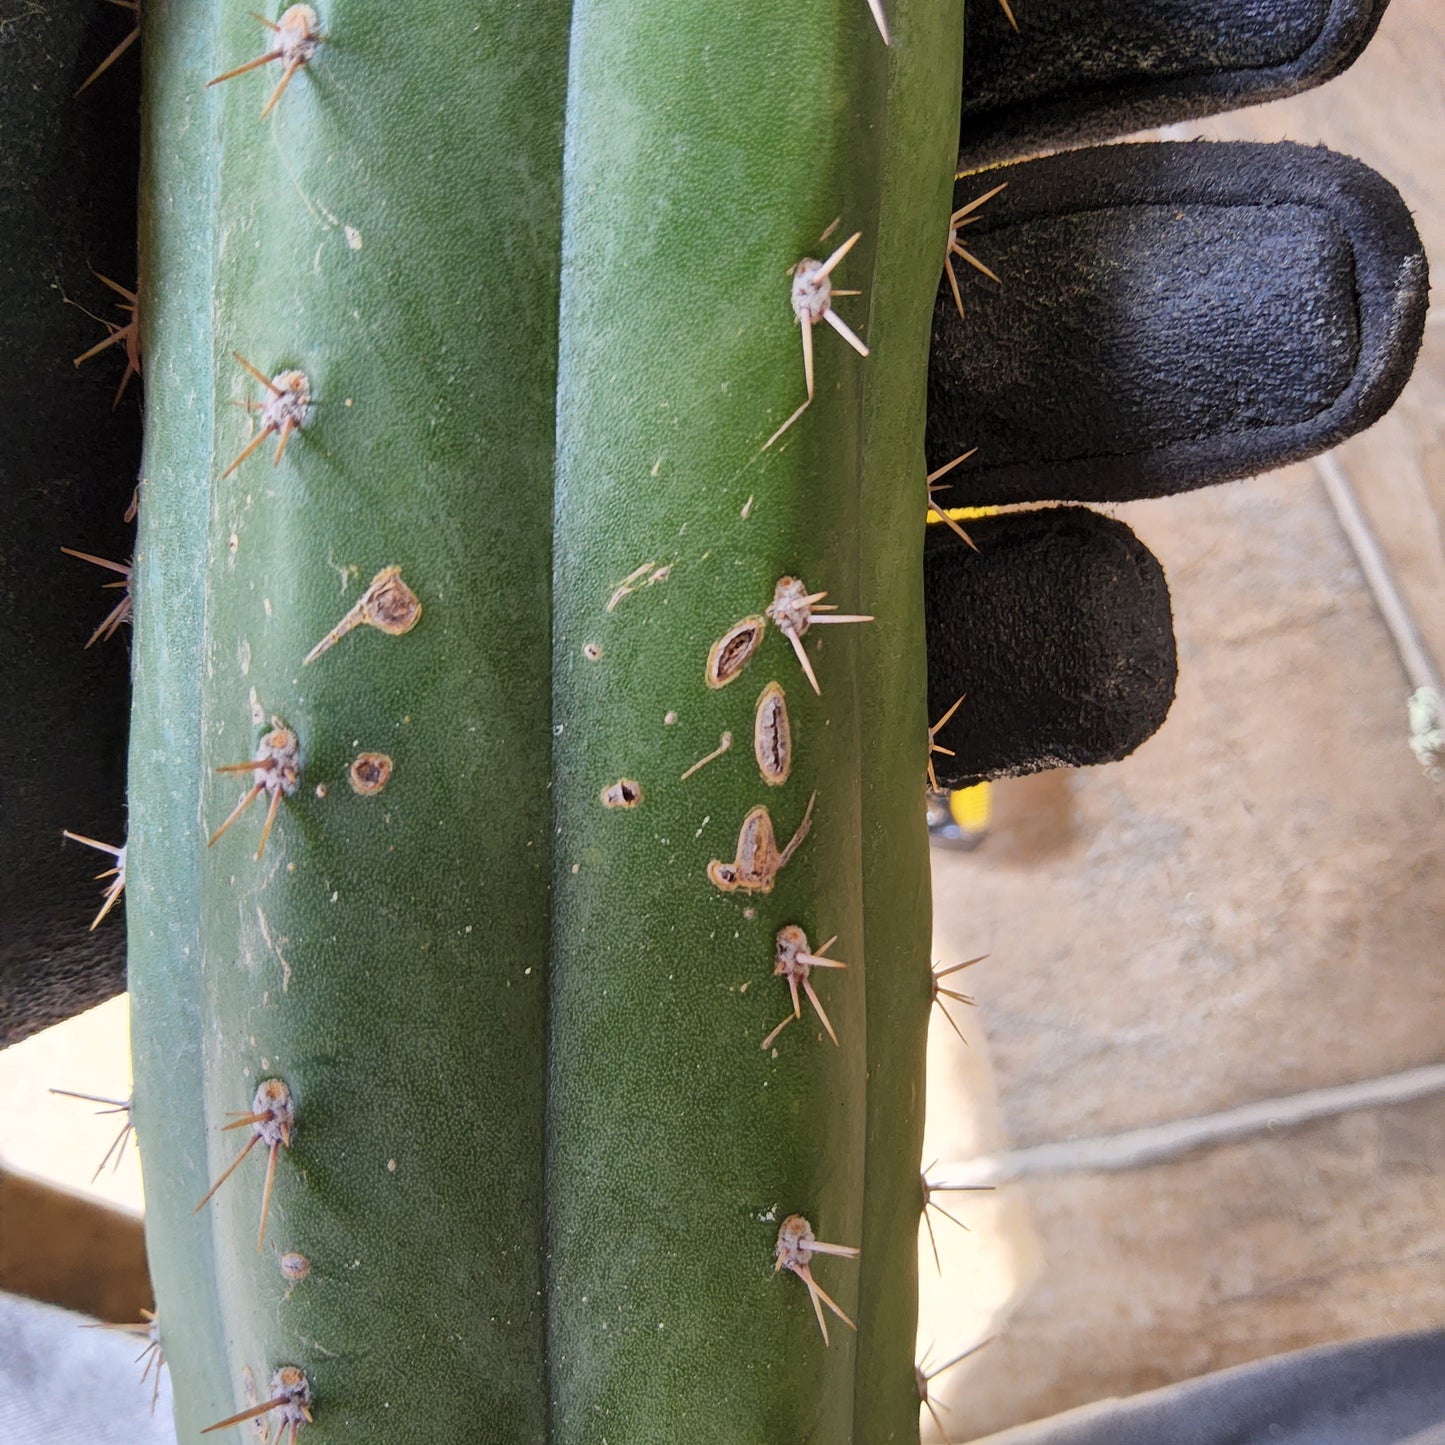 T. 'DAFQ' Cactus Cutting